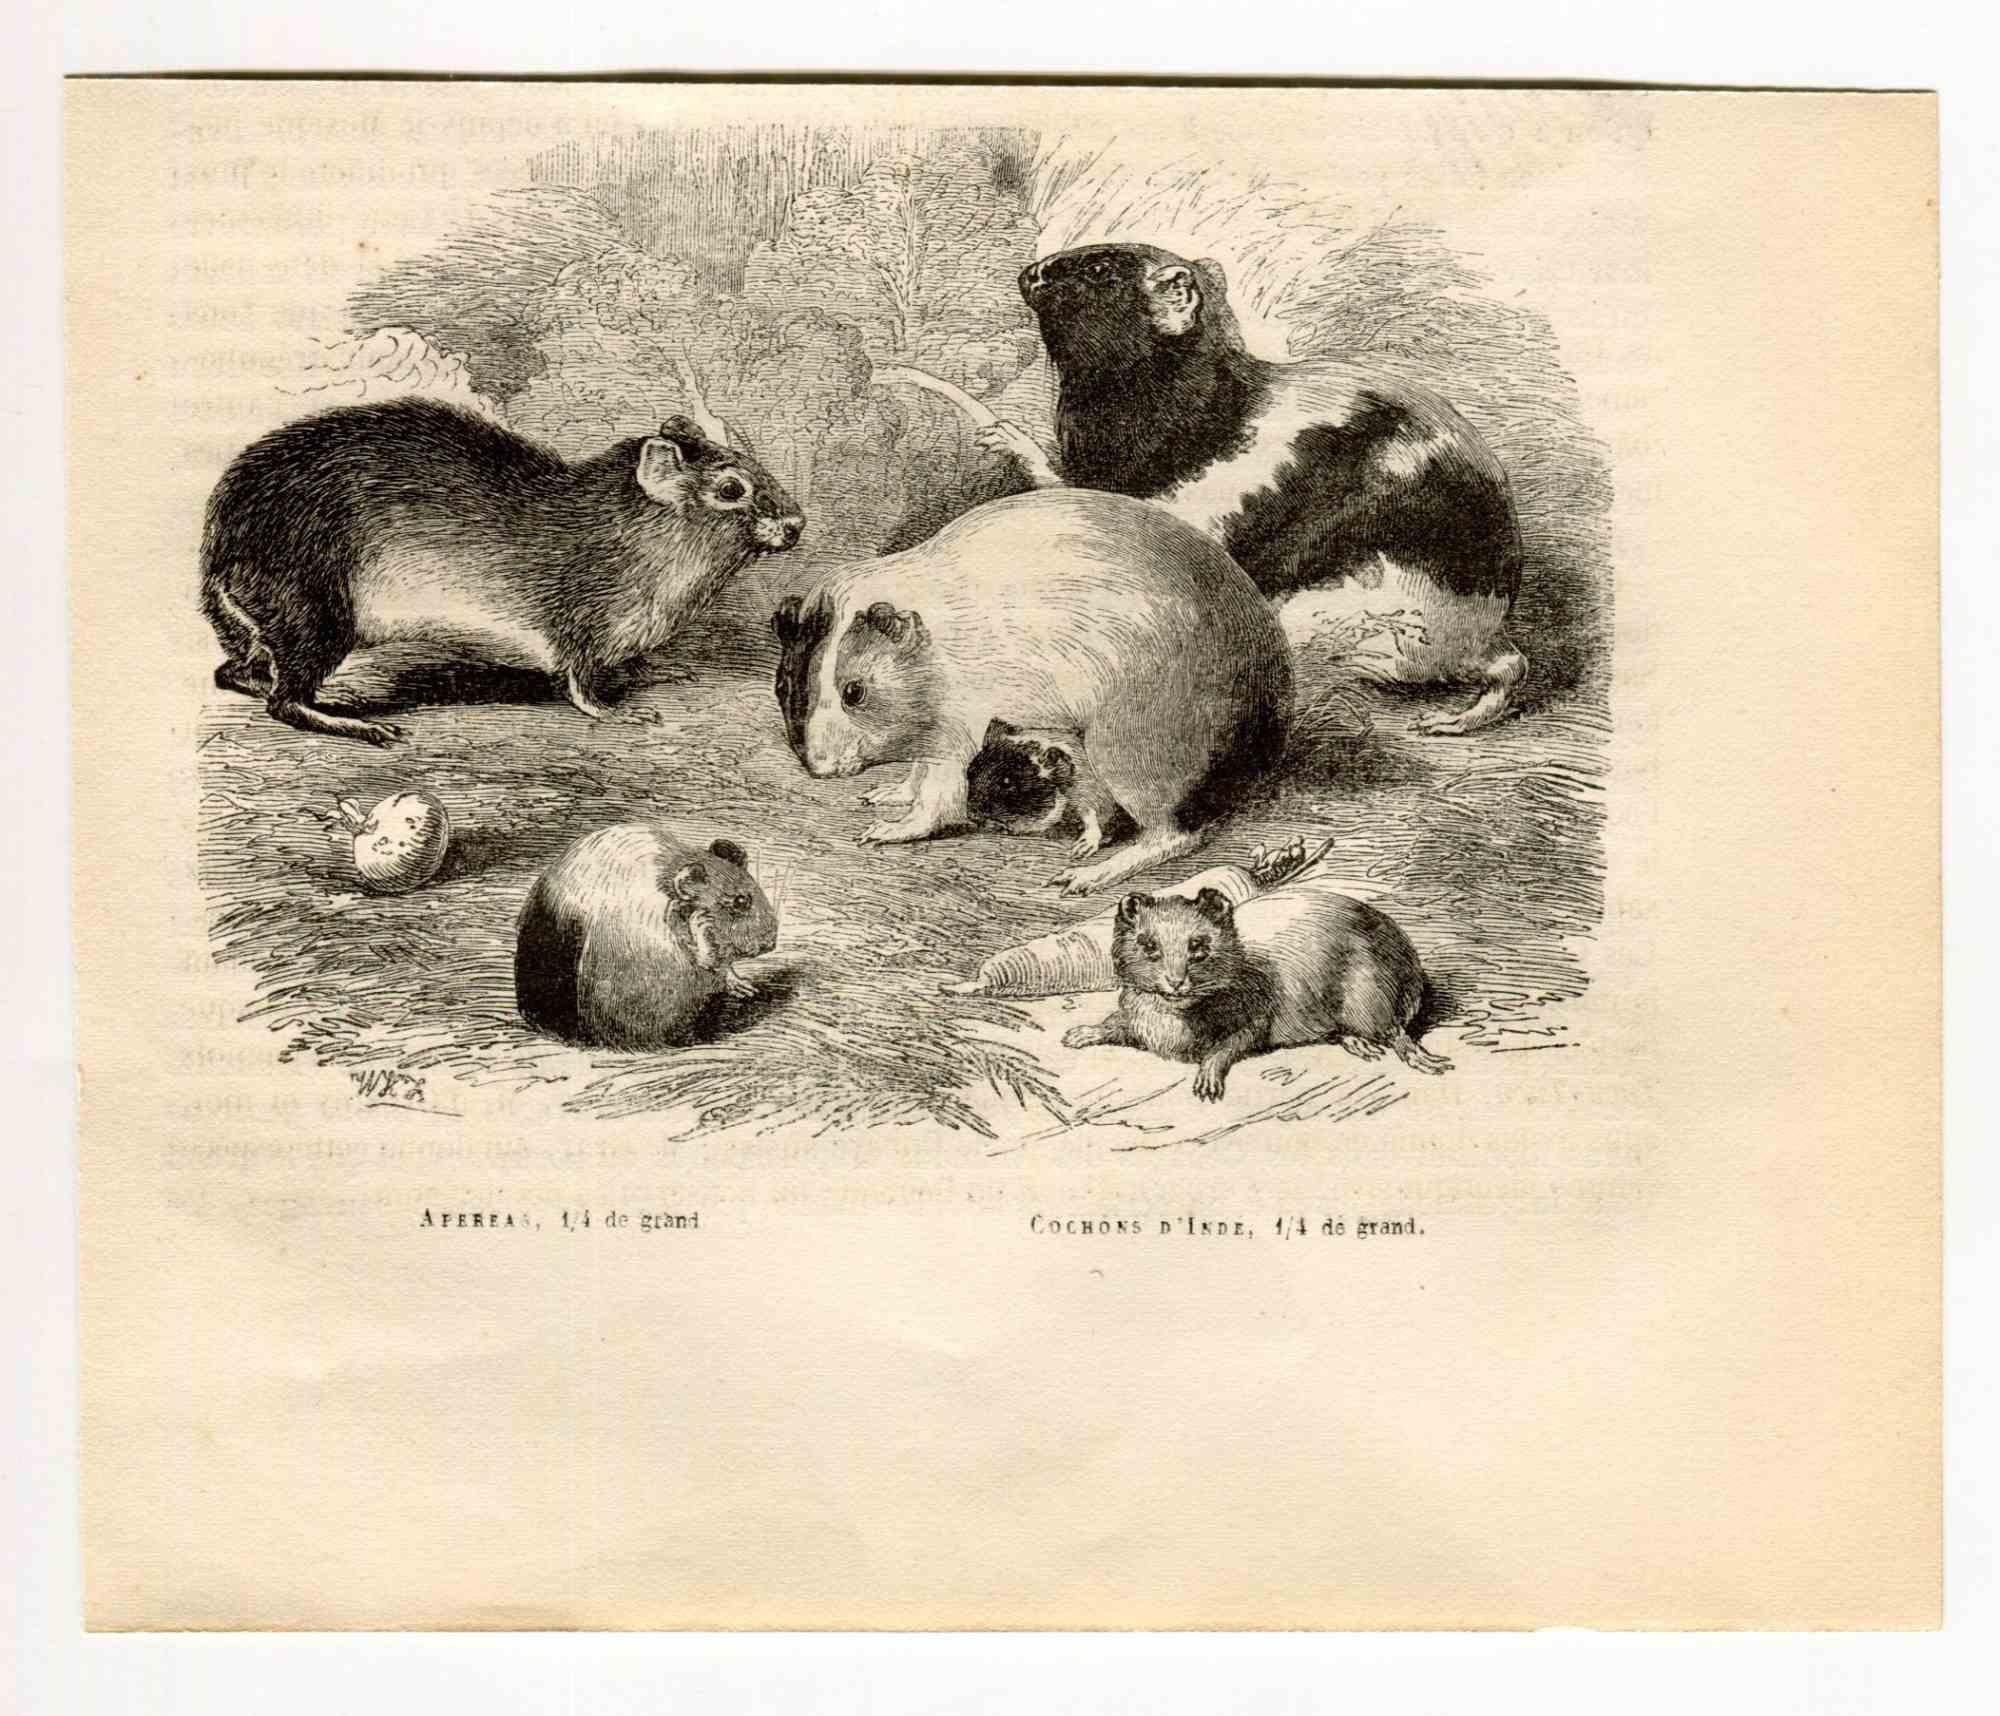 Cochon d'Inde brésilien est une lithographie originale sur papier couleur ivoire, réalisée par Paul Gervais (1816-1879). L'œuvre est tirée de la série "Les Trois Règnes de la Nature", et a été publiée en 1854.

Bonnes conditions.

Titré sur le bas.